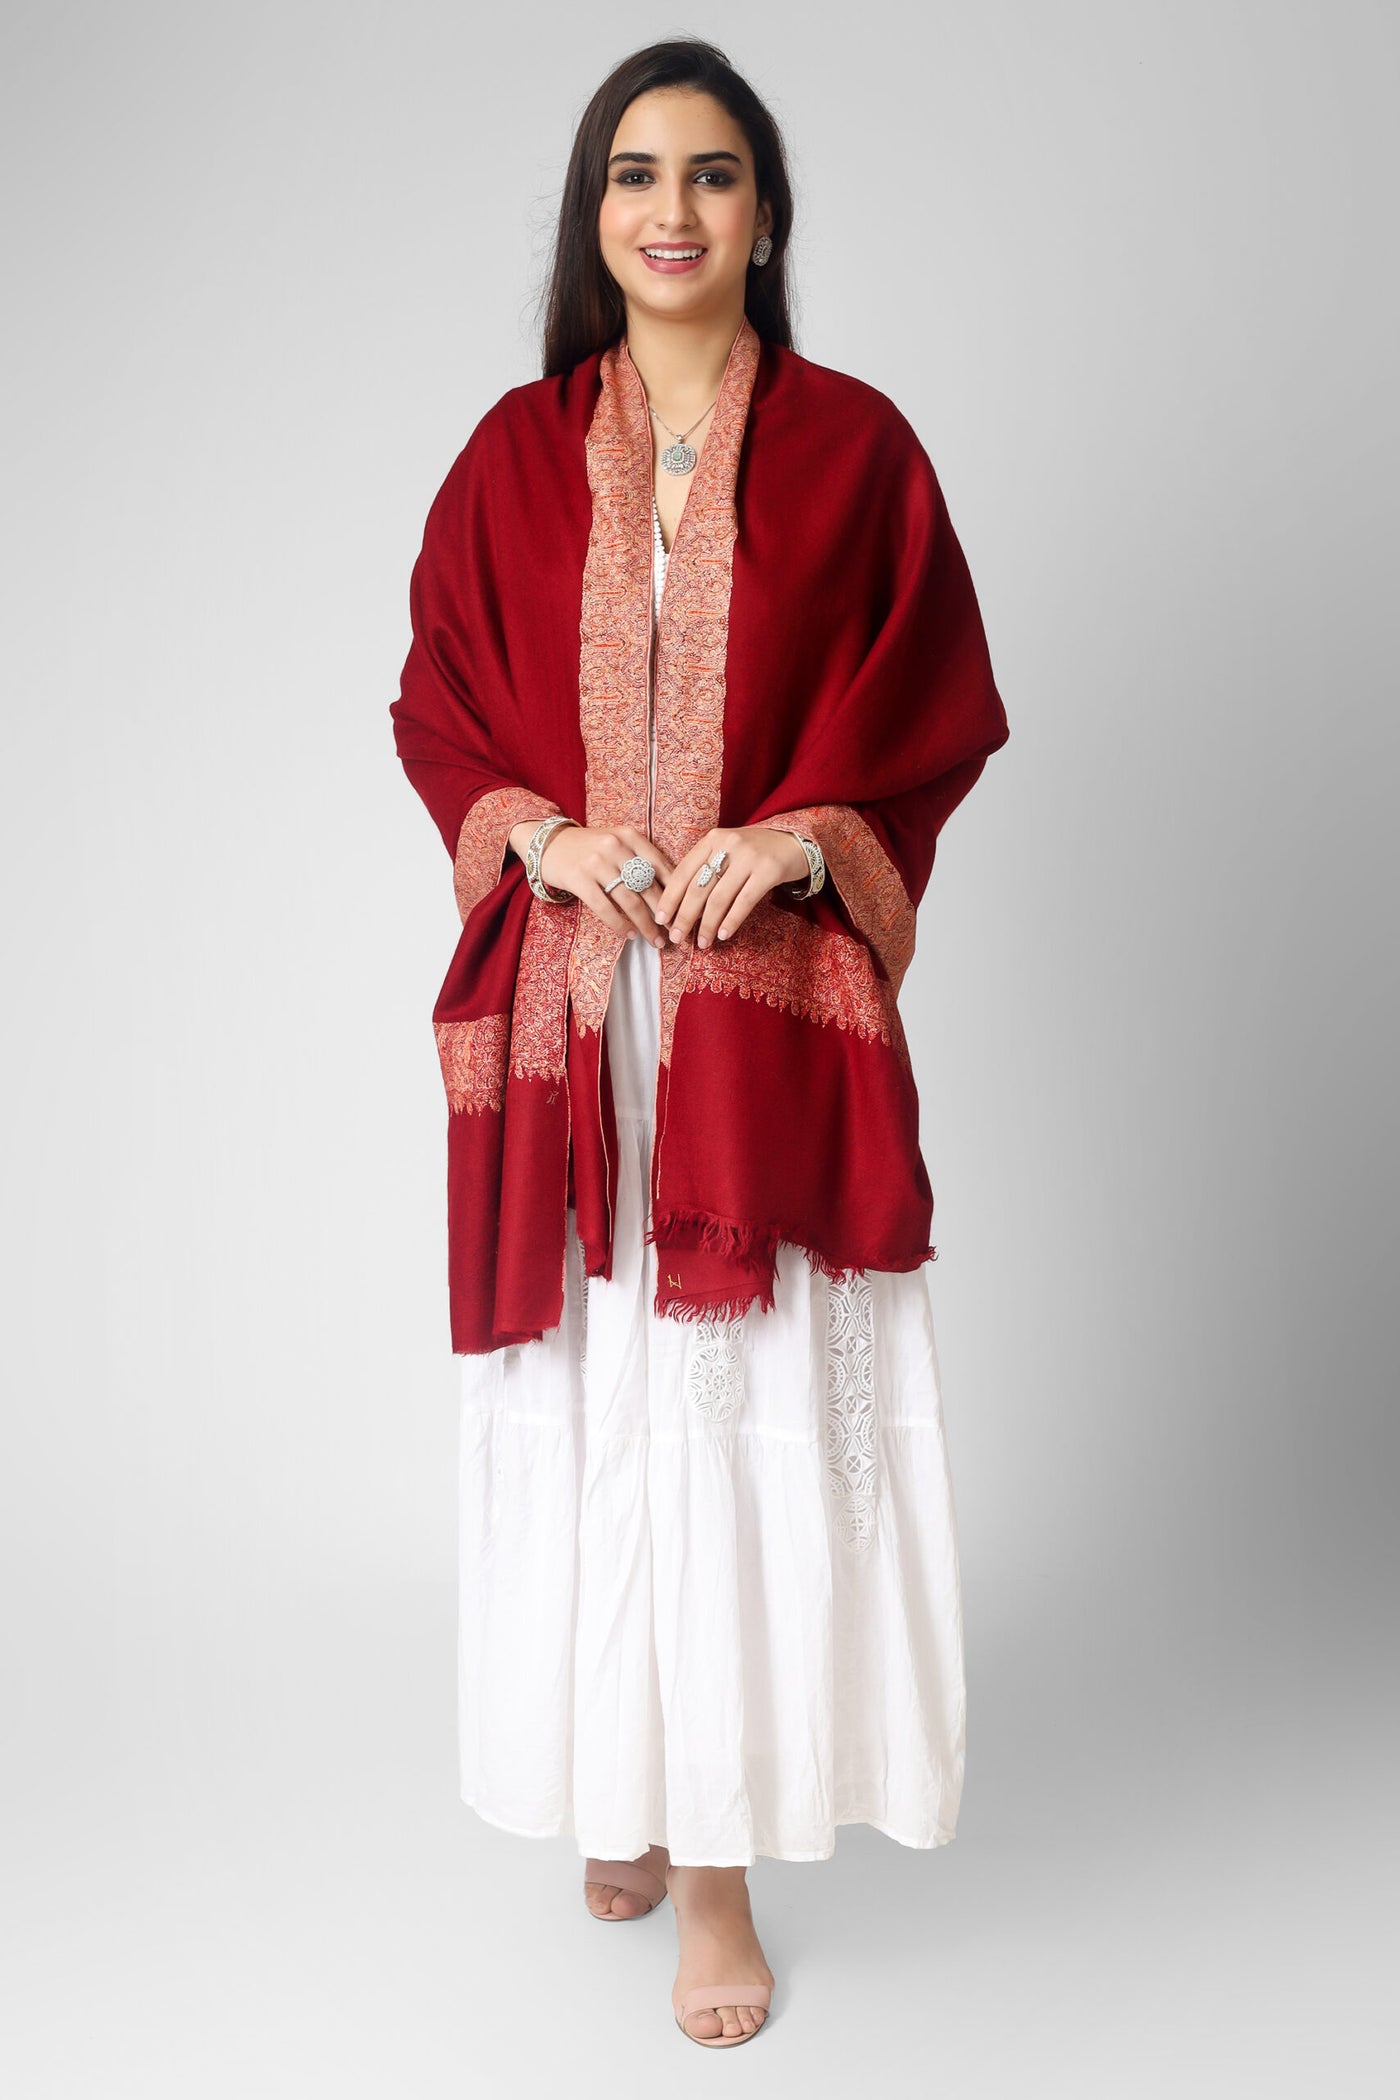 Red maroon Pashmina dourdaar sozni shawl